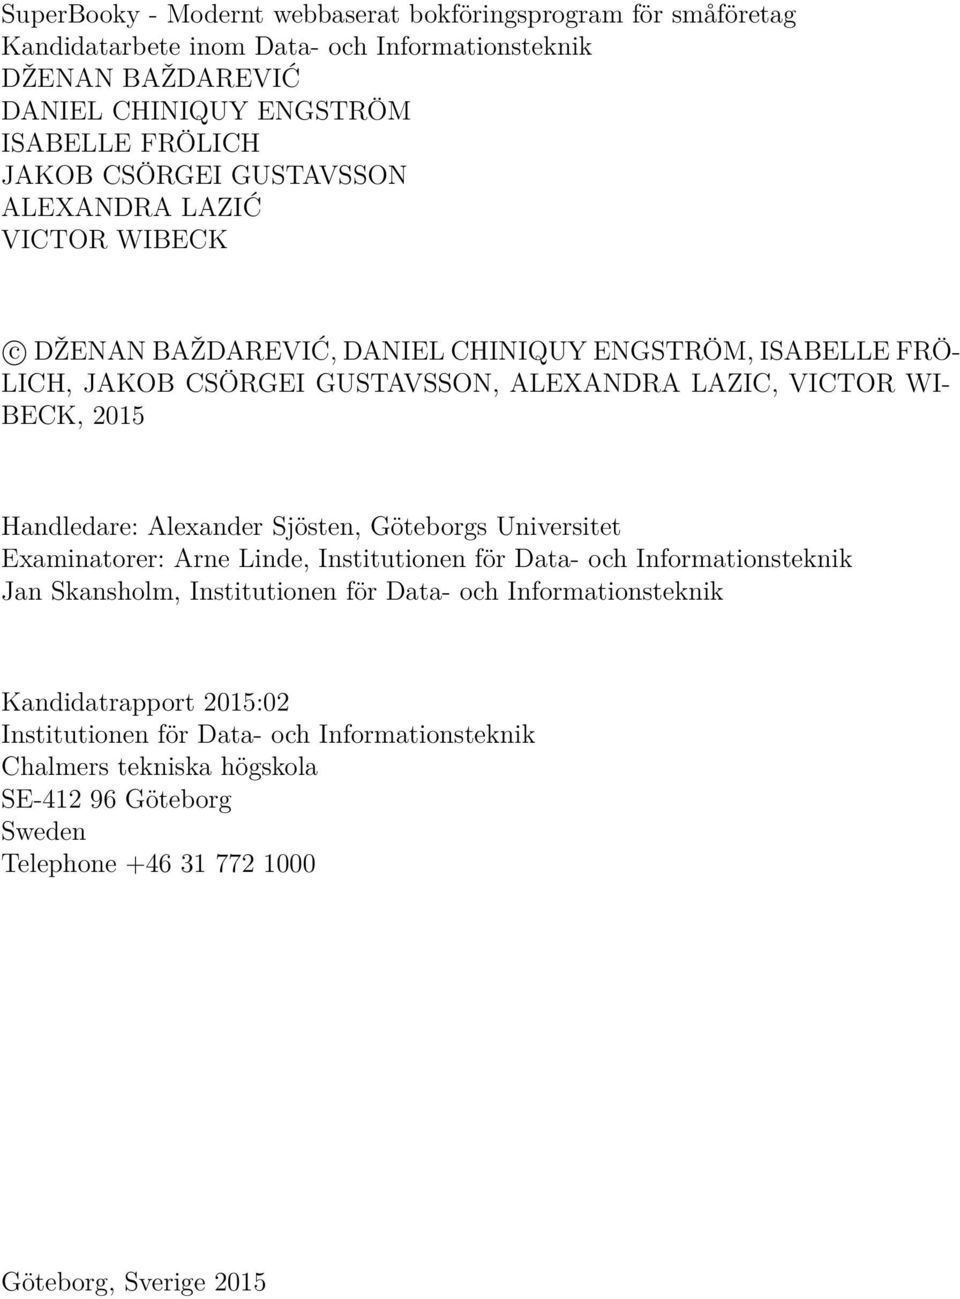 Handledare: Alexander Sjösten, Göteborgs Universitet Examinatorer: Arne Linde, Institutionen för Data- och Informationsteknik Jan Skansholm, Institutionen för Data- och